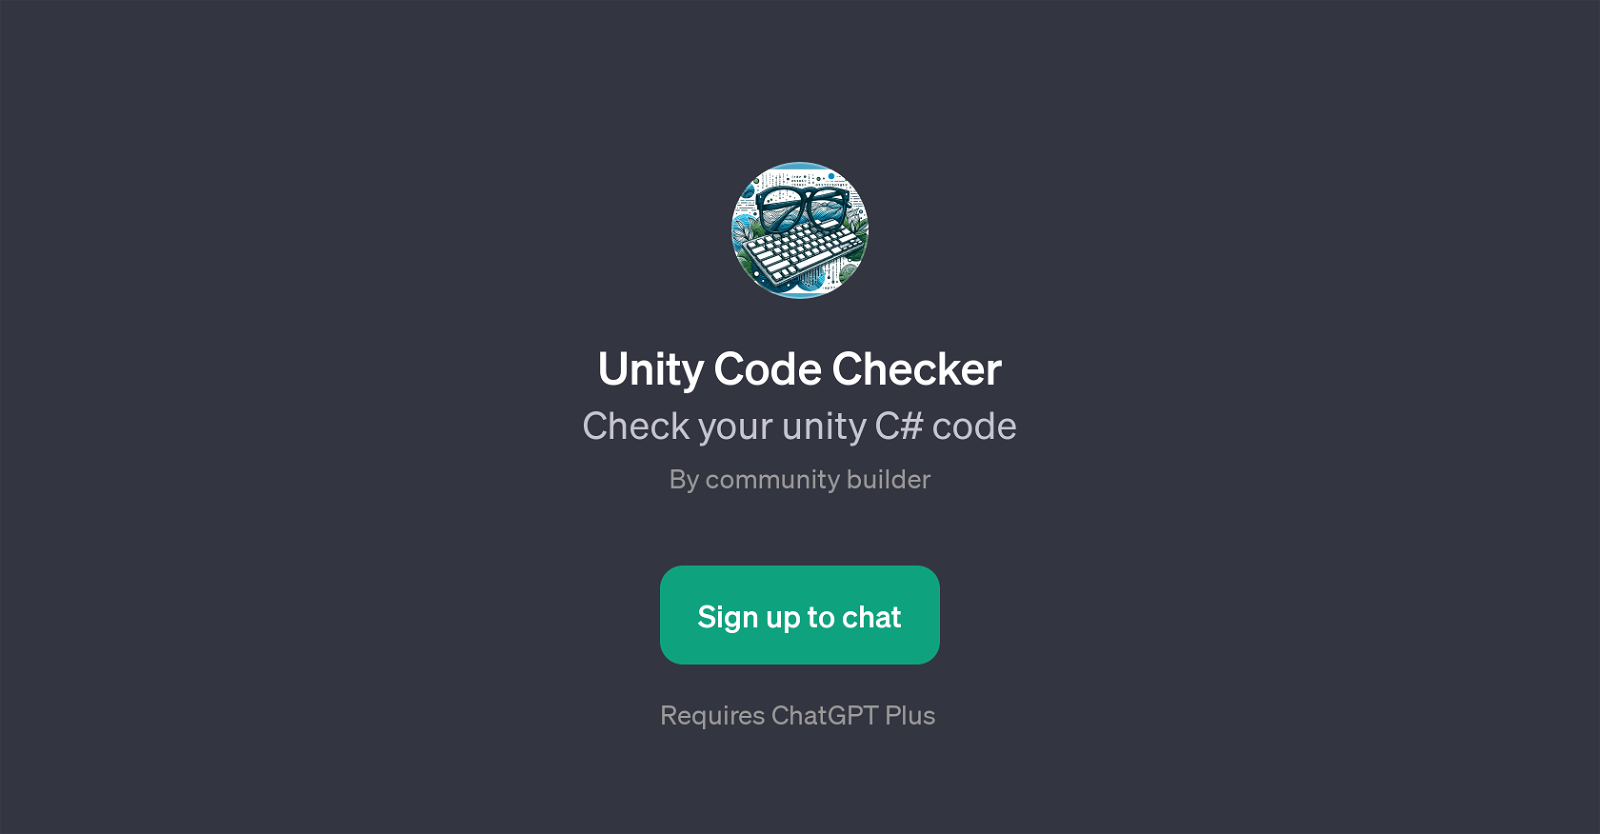 Unity Code Checker website